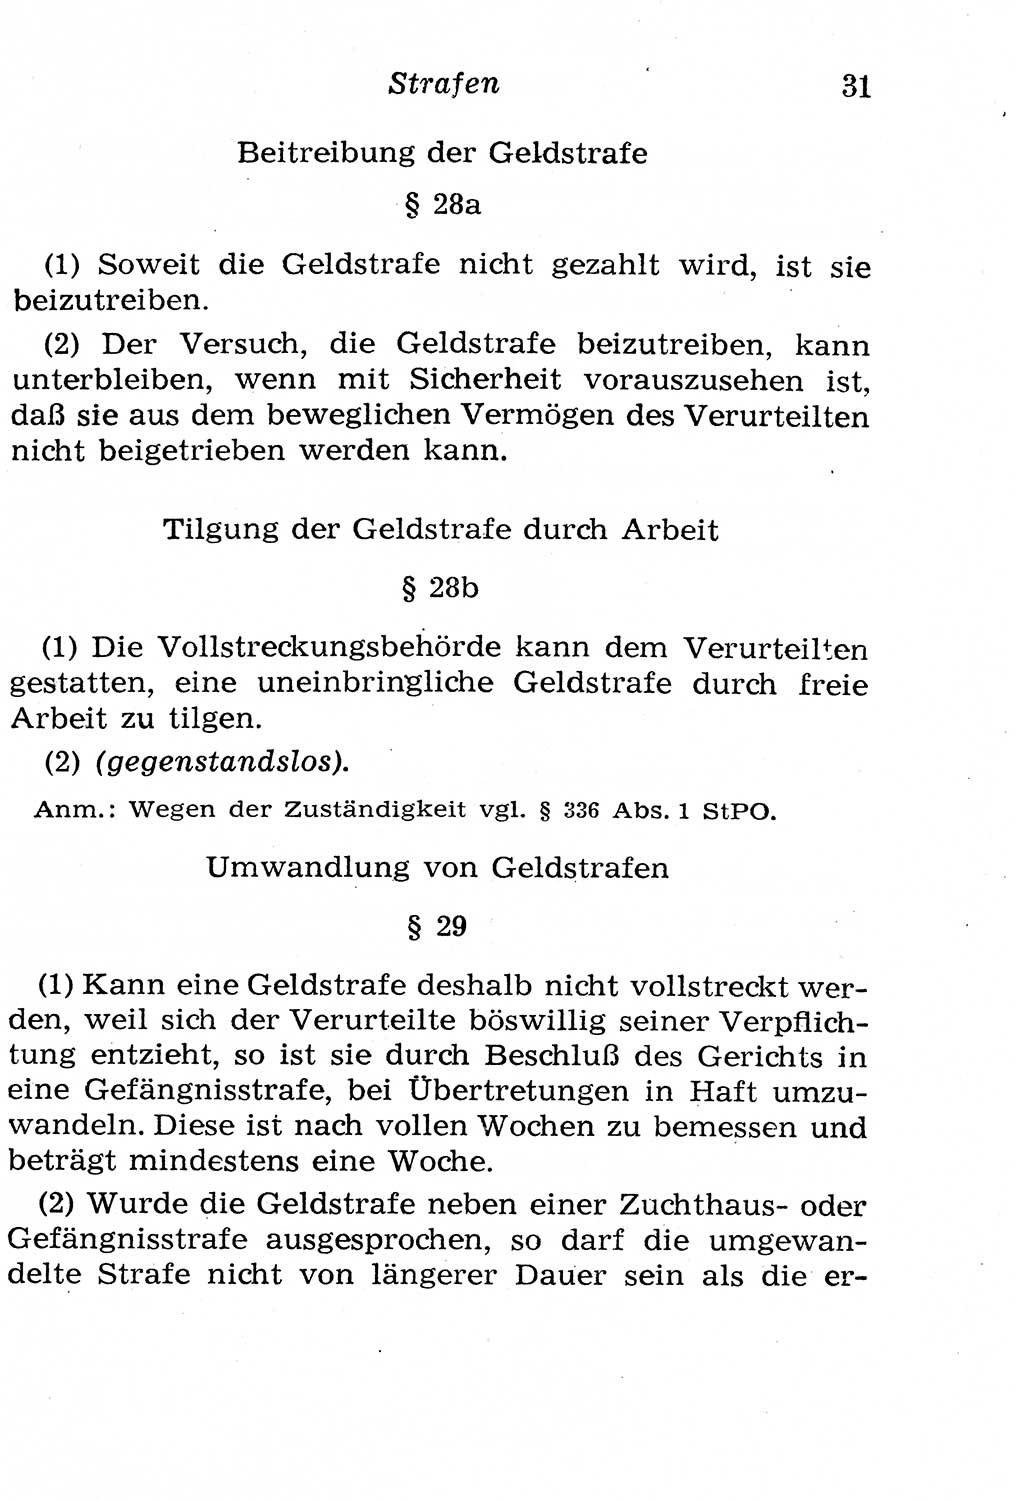 Strafgesetzbuch (StGB) und andere Strafgesetze [Deutsche Demokratische Republik (DDR)] 1958, Seite 31 (StGB Strafges. DDR 1958, S. 31)